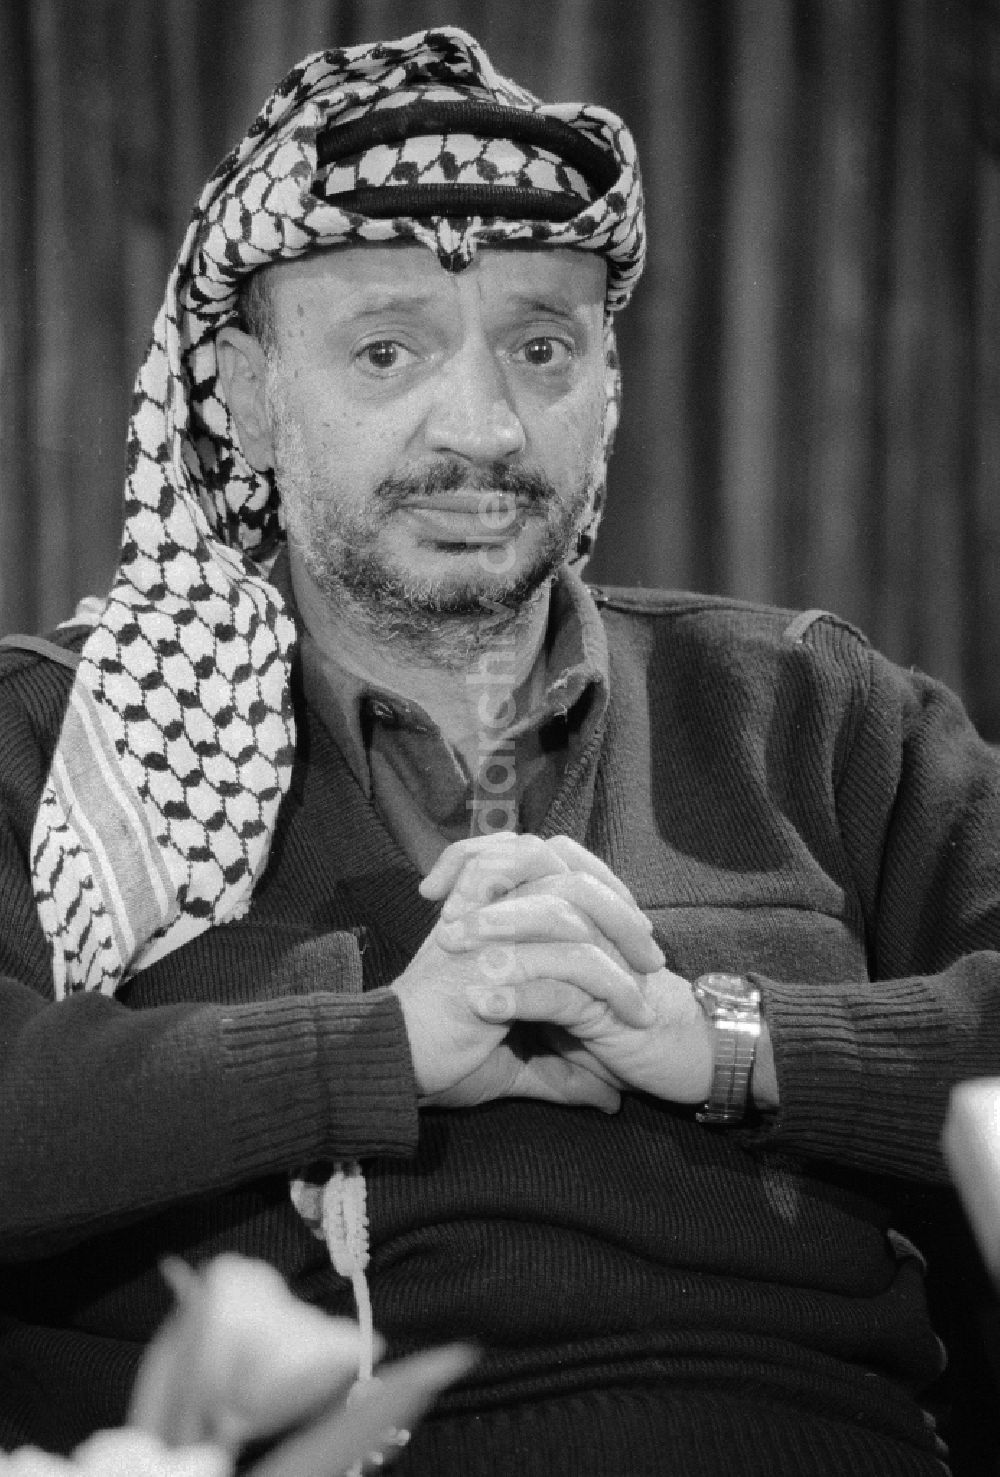 DDR-Bildarchiv: Berlin - Jassir Arafat (1929 - 2004) im Portrait in Berlin, der ehemaligen Hauptstadt der DDR, Deutsche Demokratische Republik